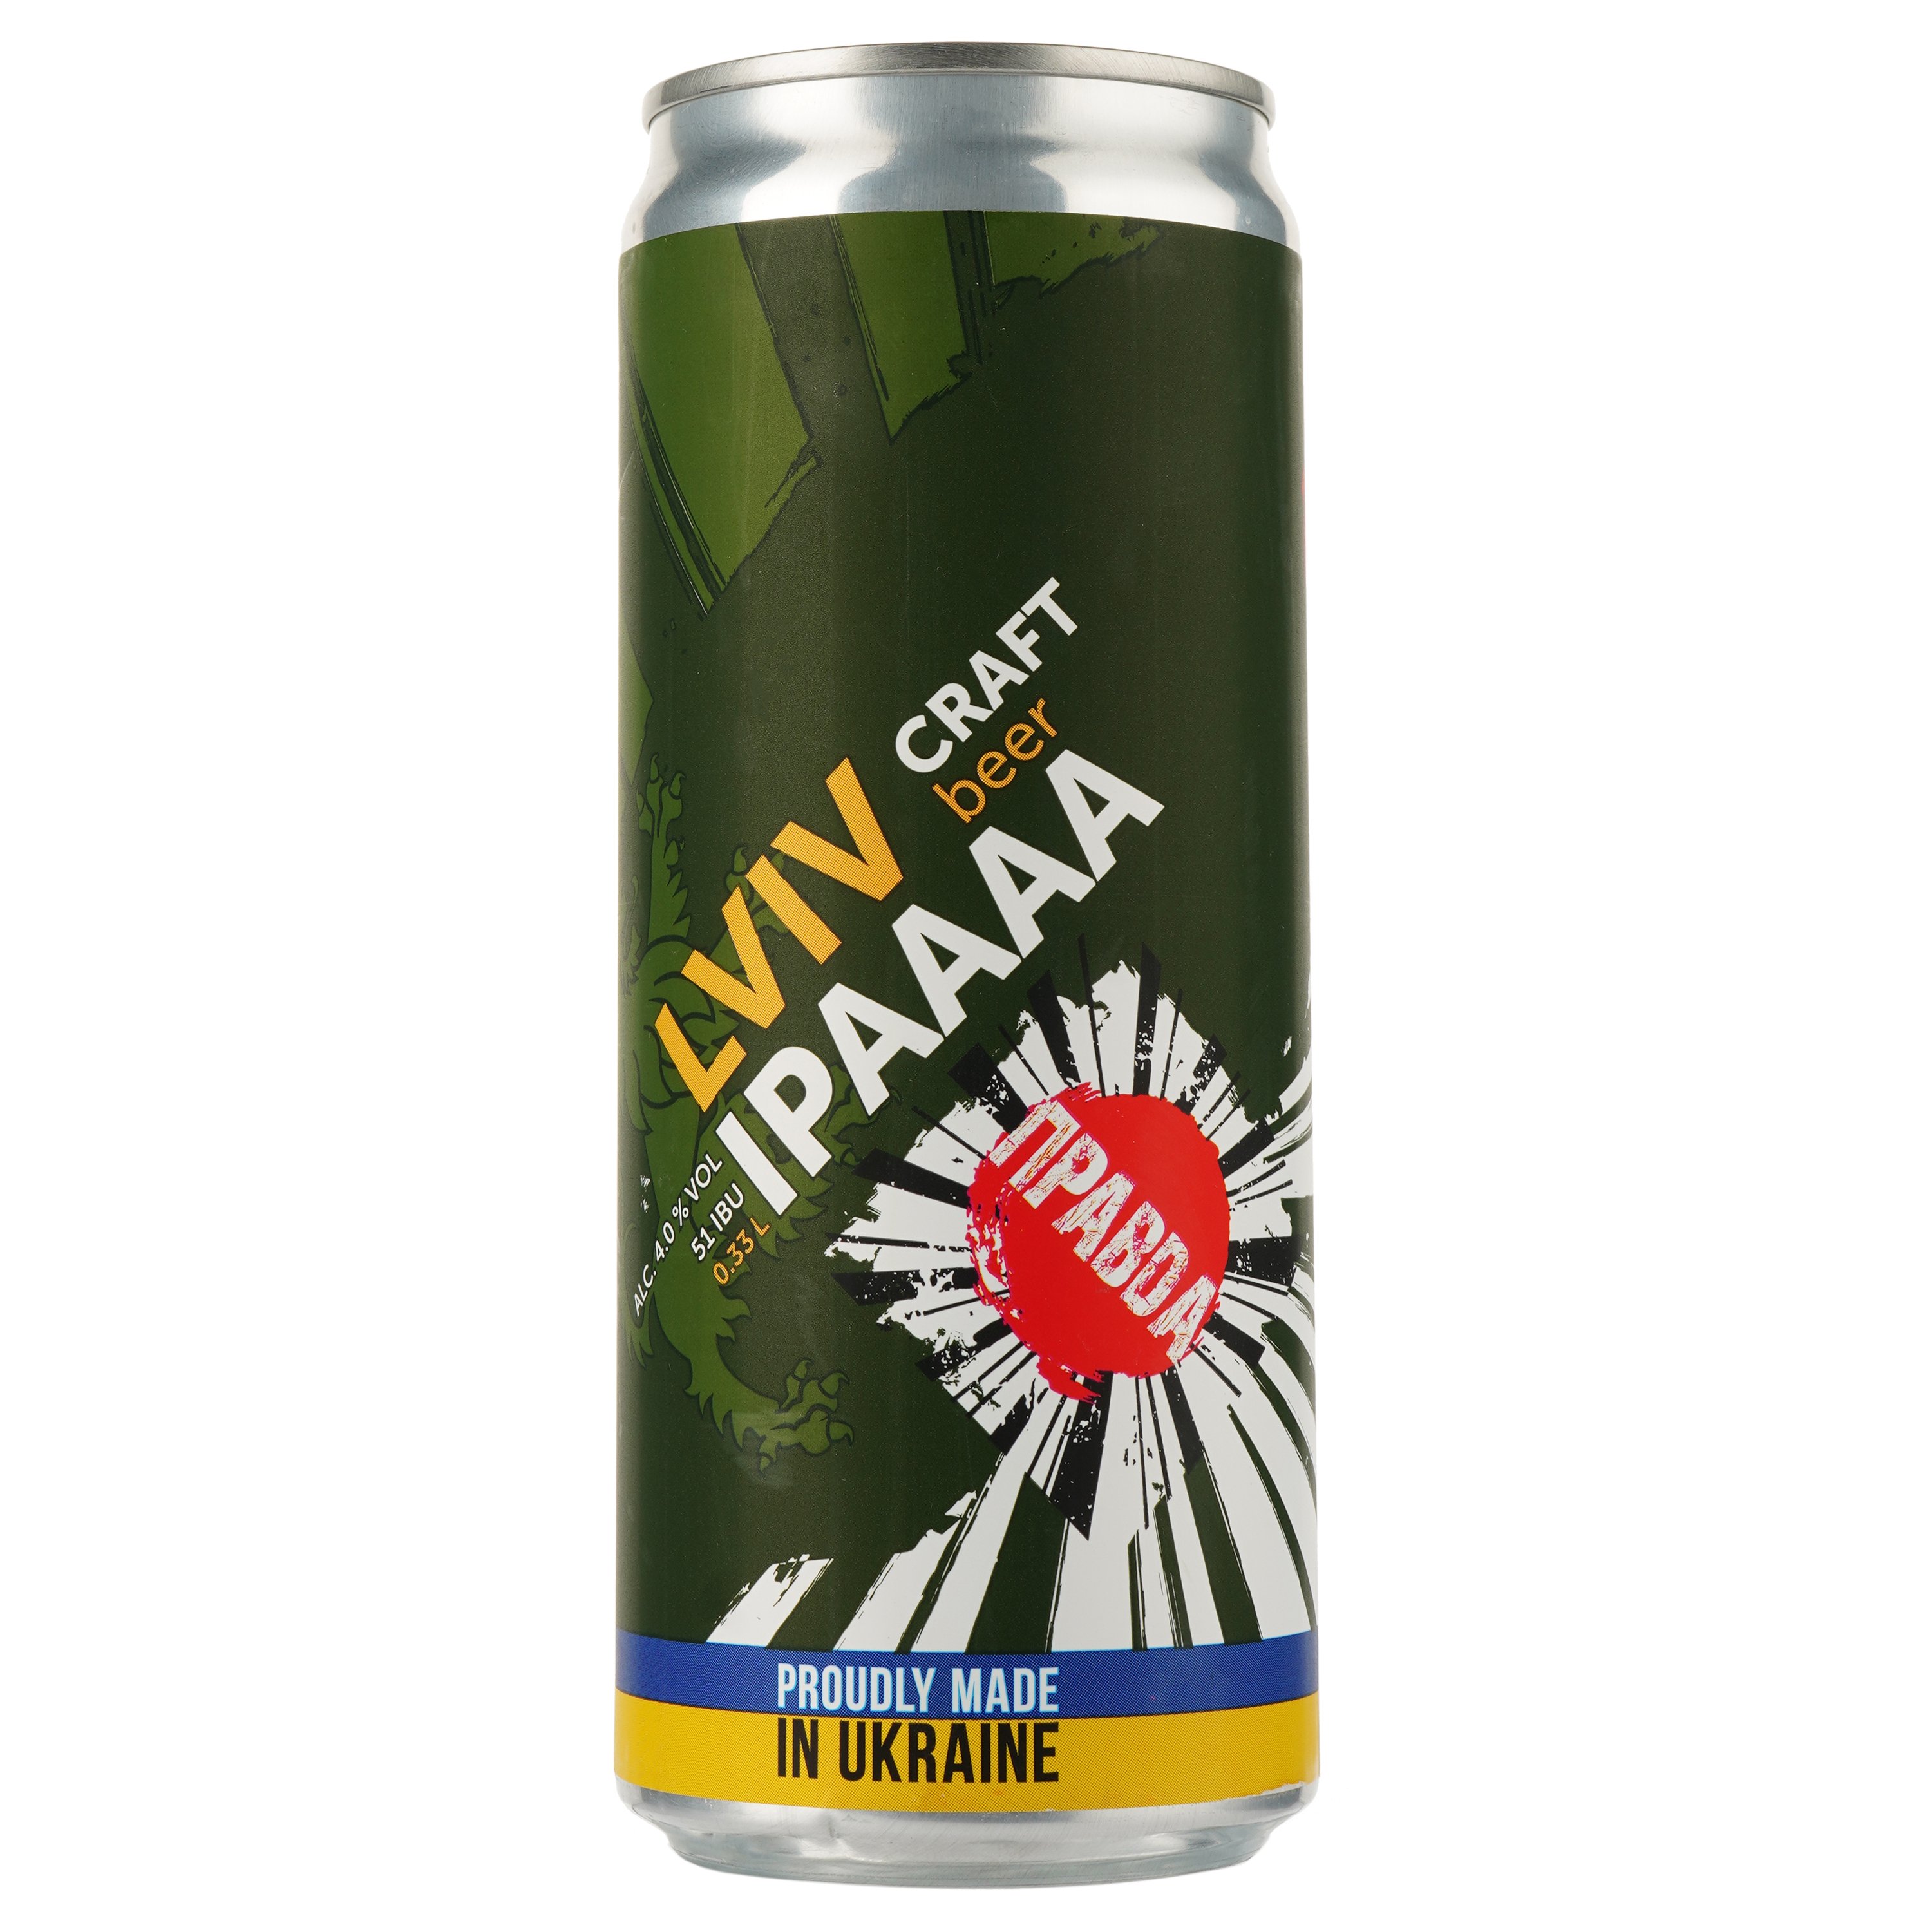 Пиво Правда Lviv Ipa, светлое, нефильтрованное, 4%, ж/б, 0,33 л (913933) - фото 1